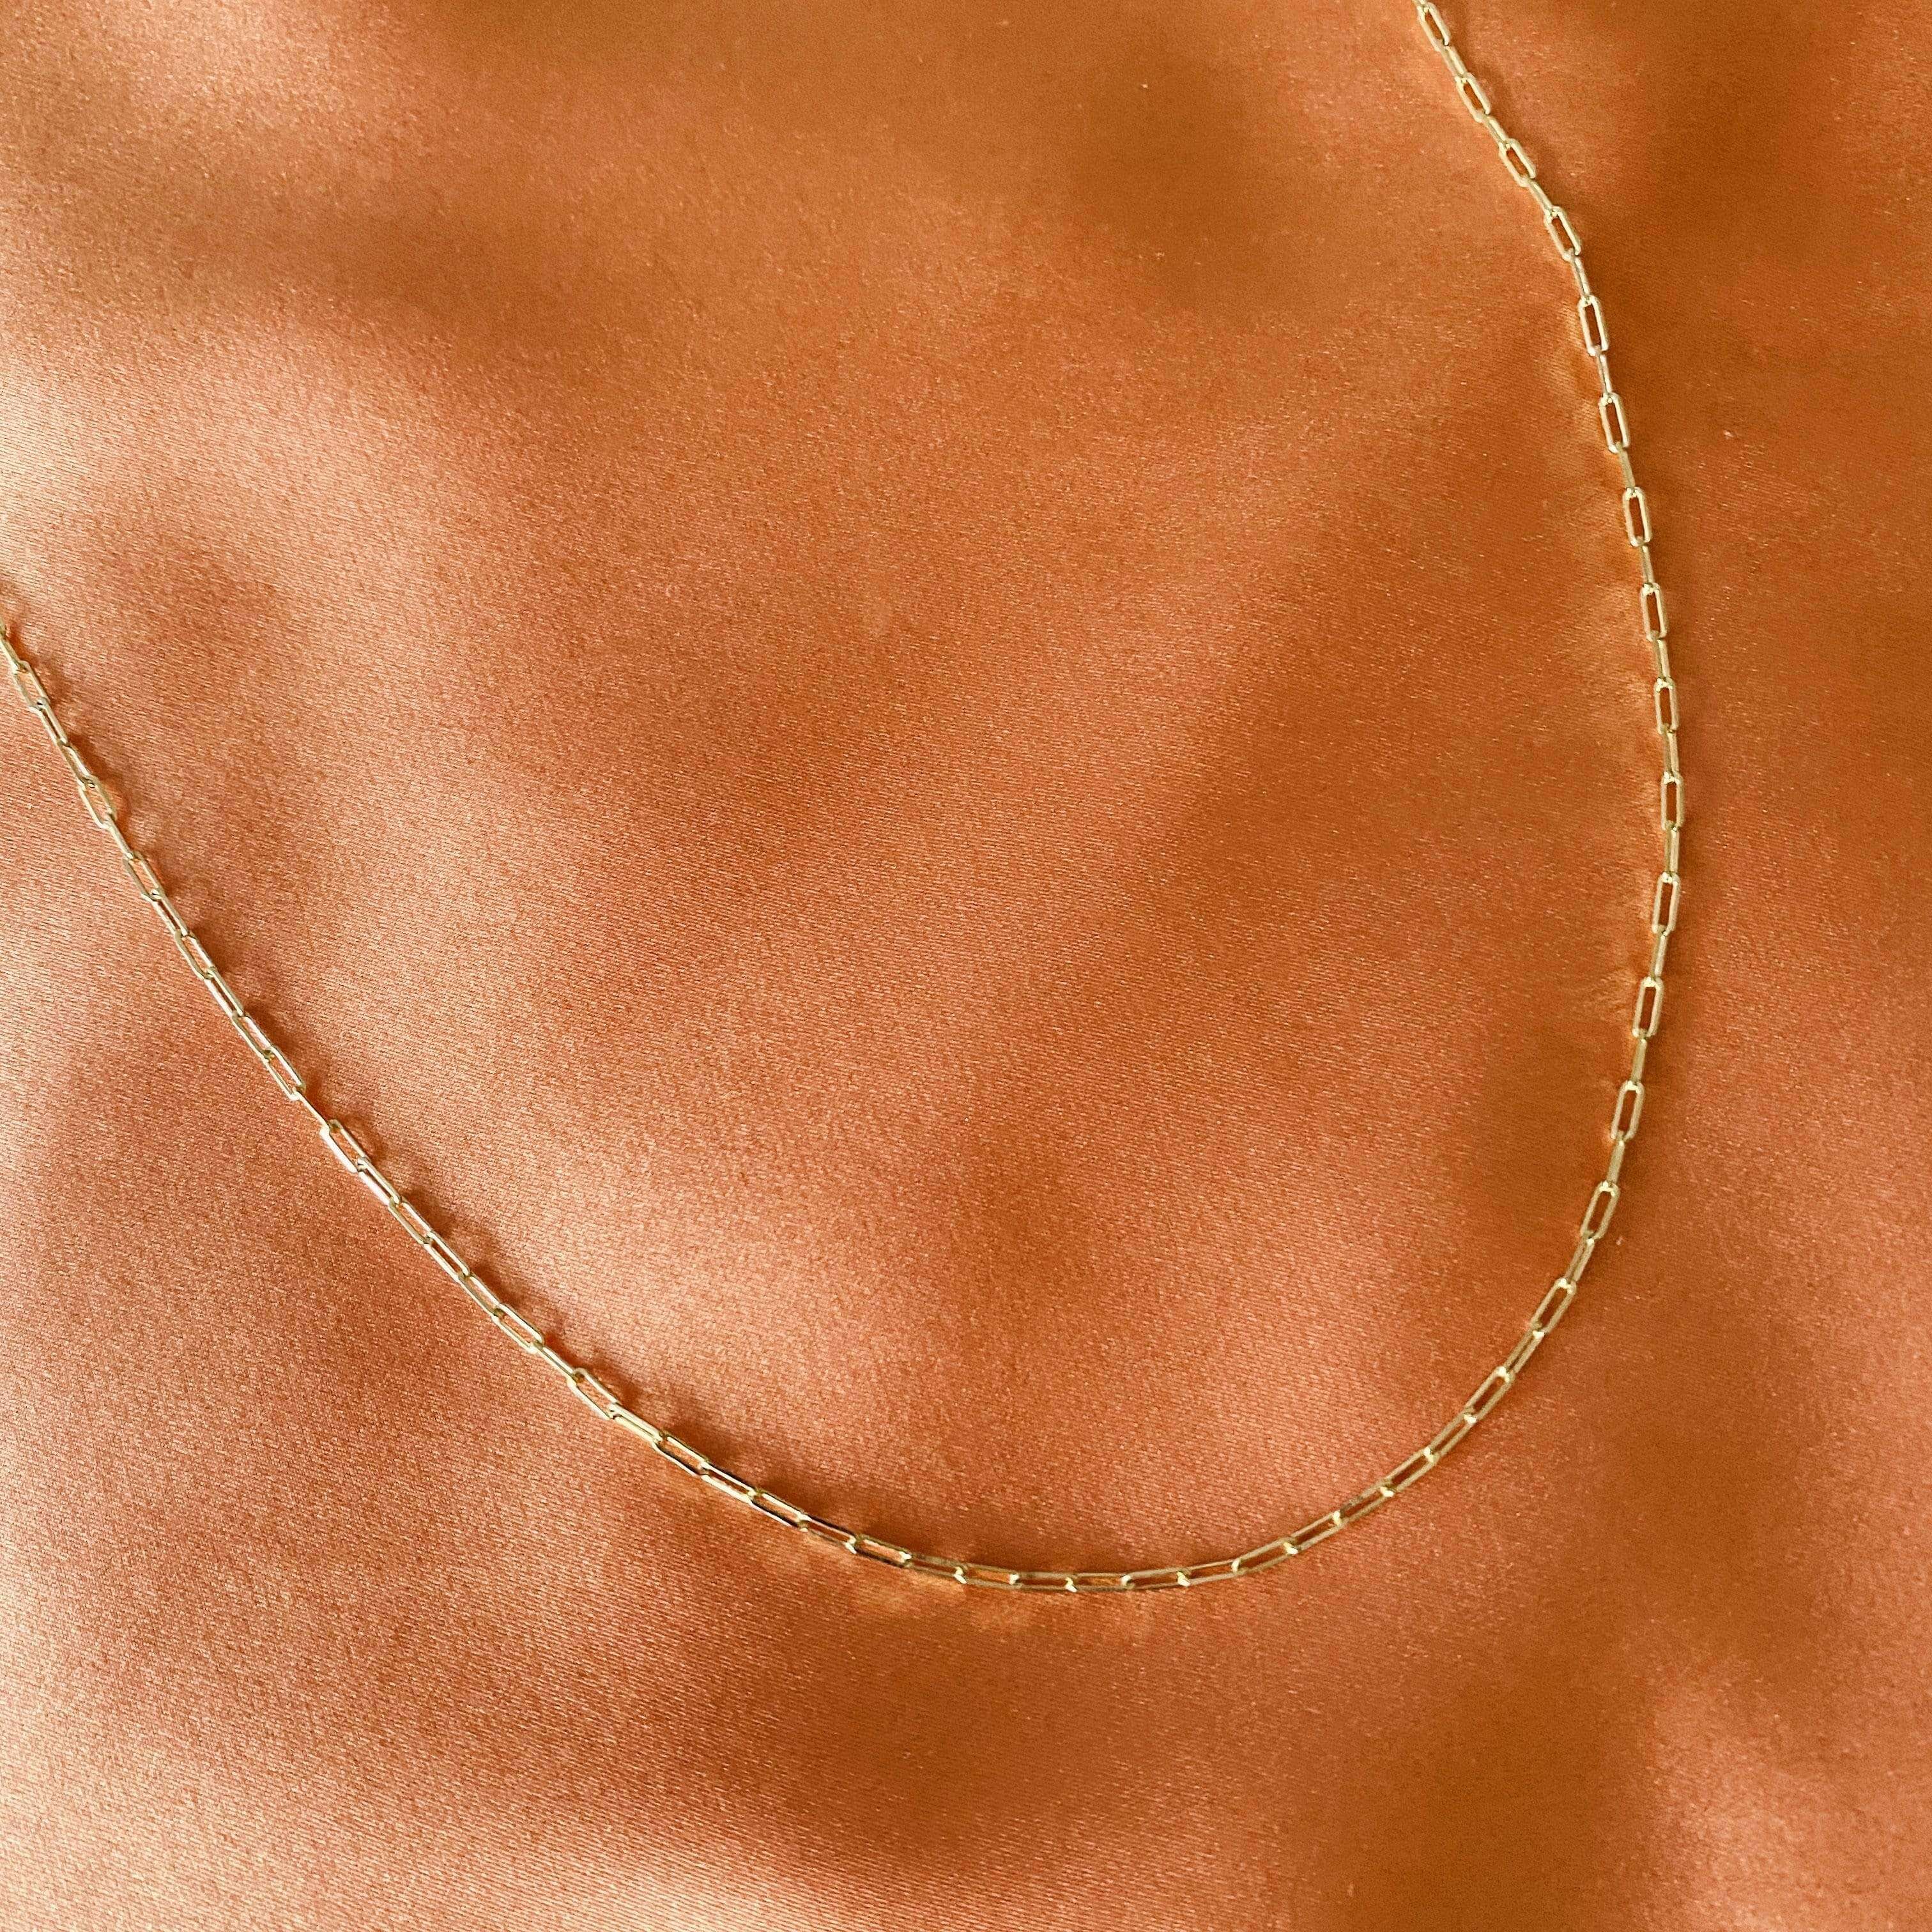 LE sensor Chain Callie Chain Necklace 16”